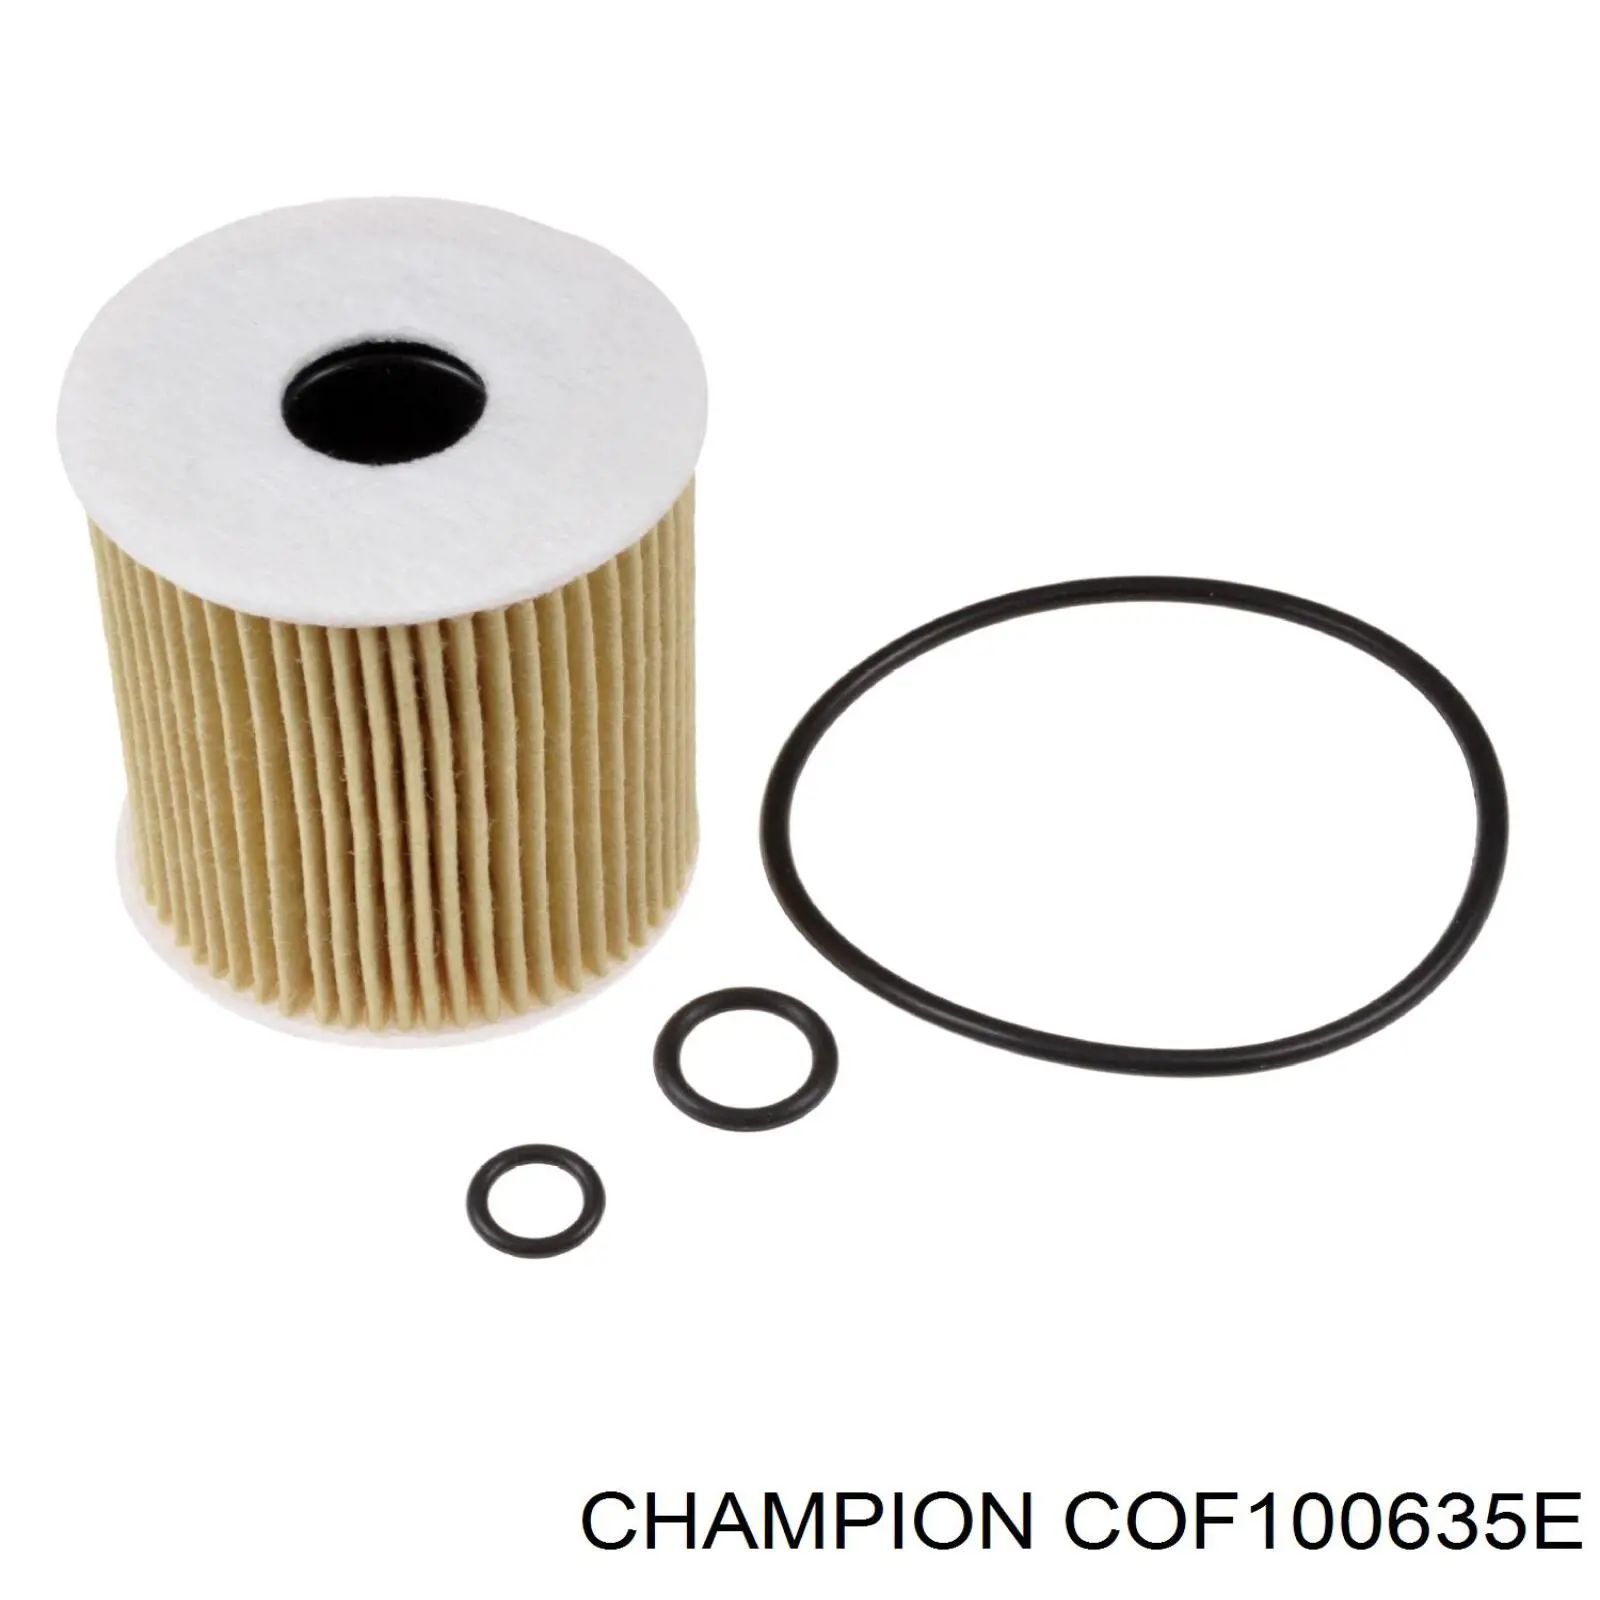 COF100635E Champion filtro de aceite